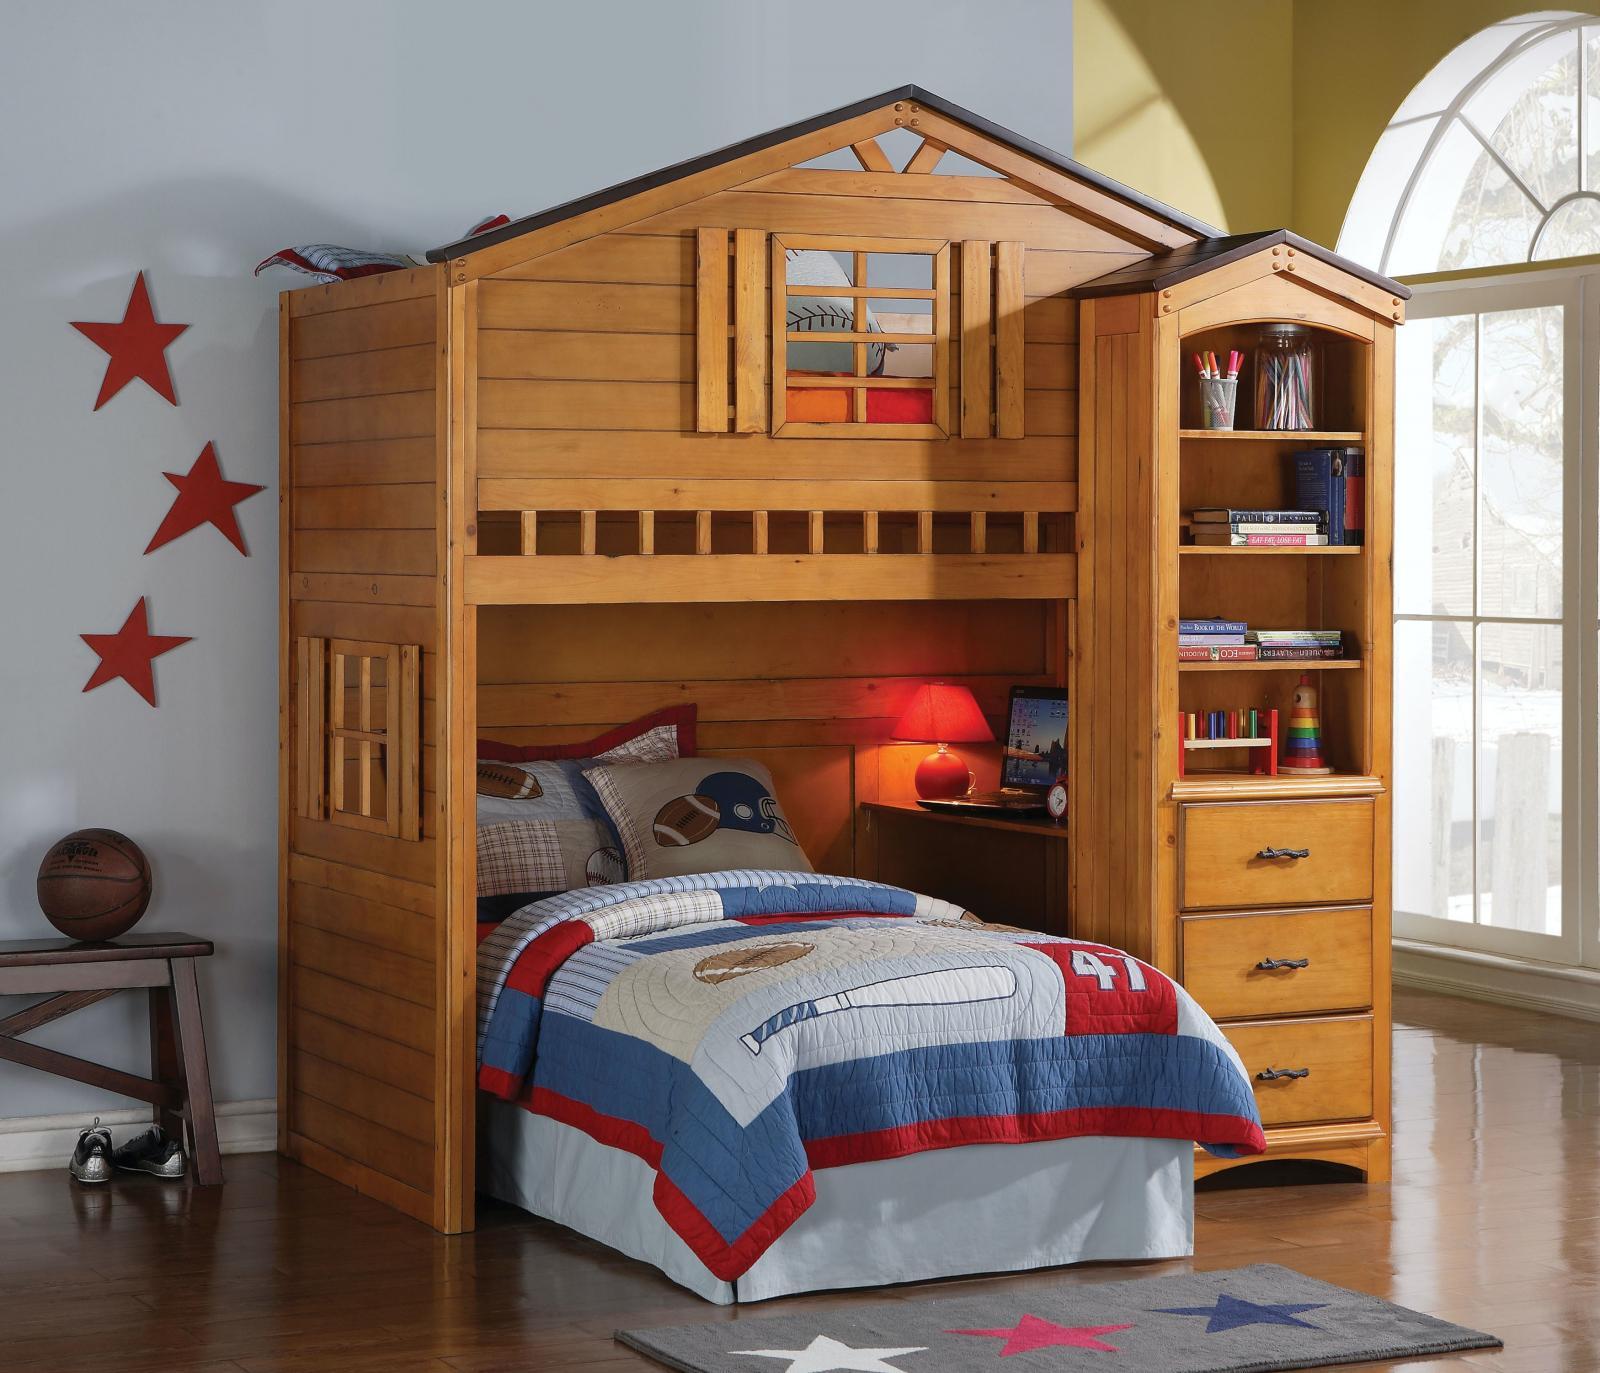 

    
10160-2pcs Wood Rustic Oak Loft Bed + Bookshelf by Acme Tree House 10160-2pcs
